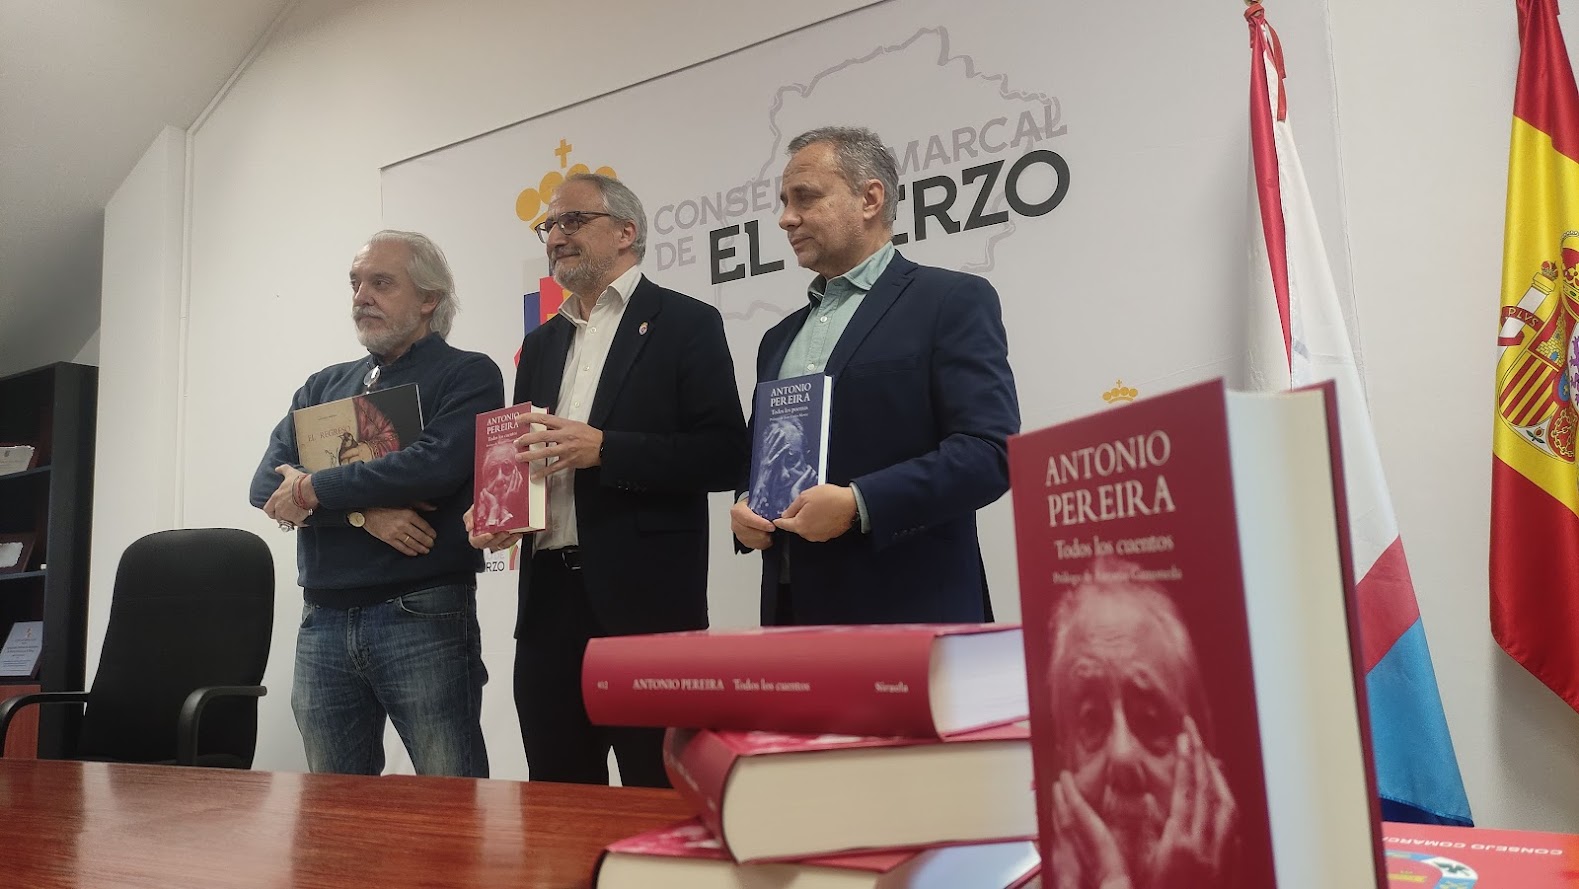 Antonio Pereira estará presente en todas las bibliotecas del Bierzo, gracias a la colaboración del Consejo Comarcal 1